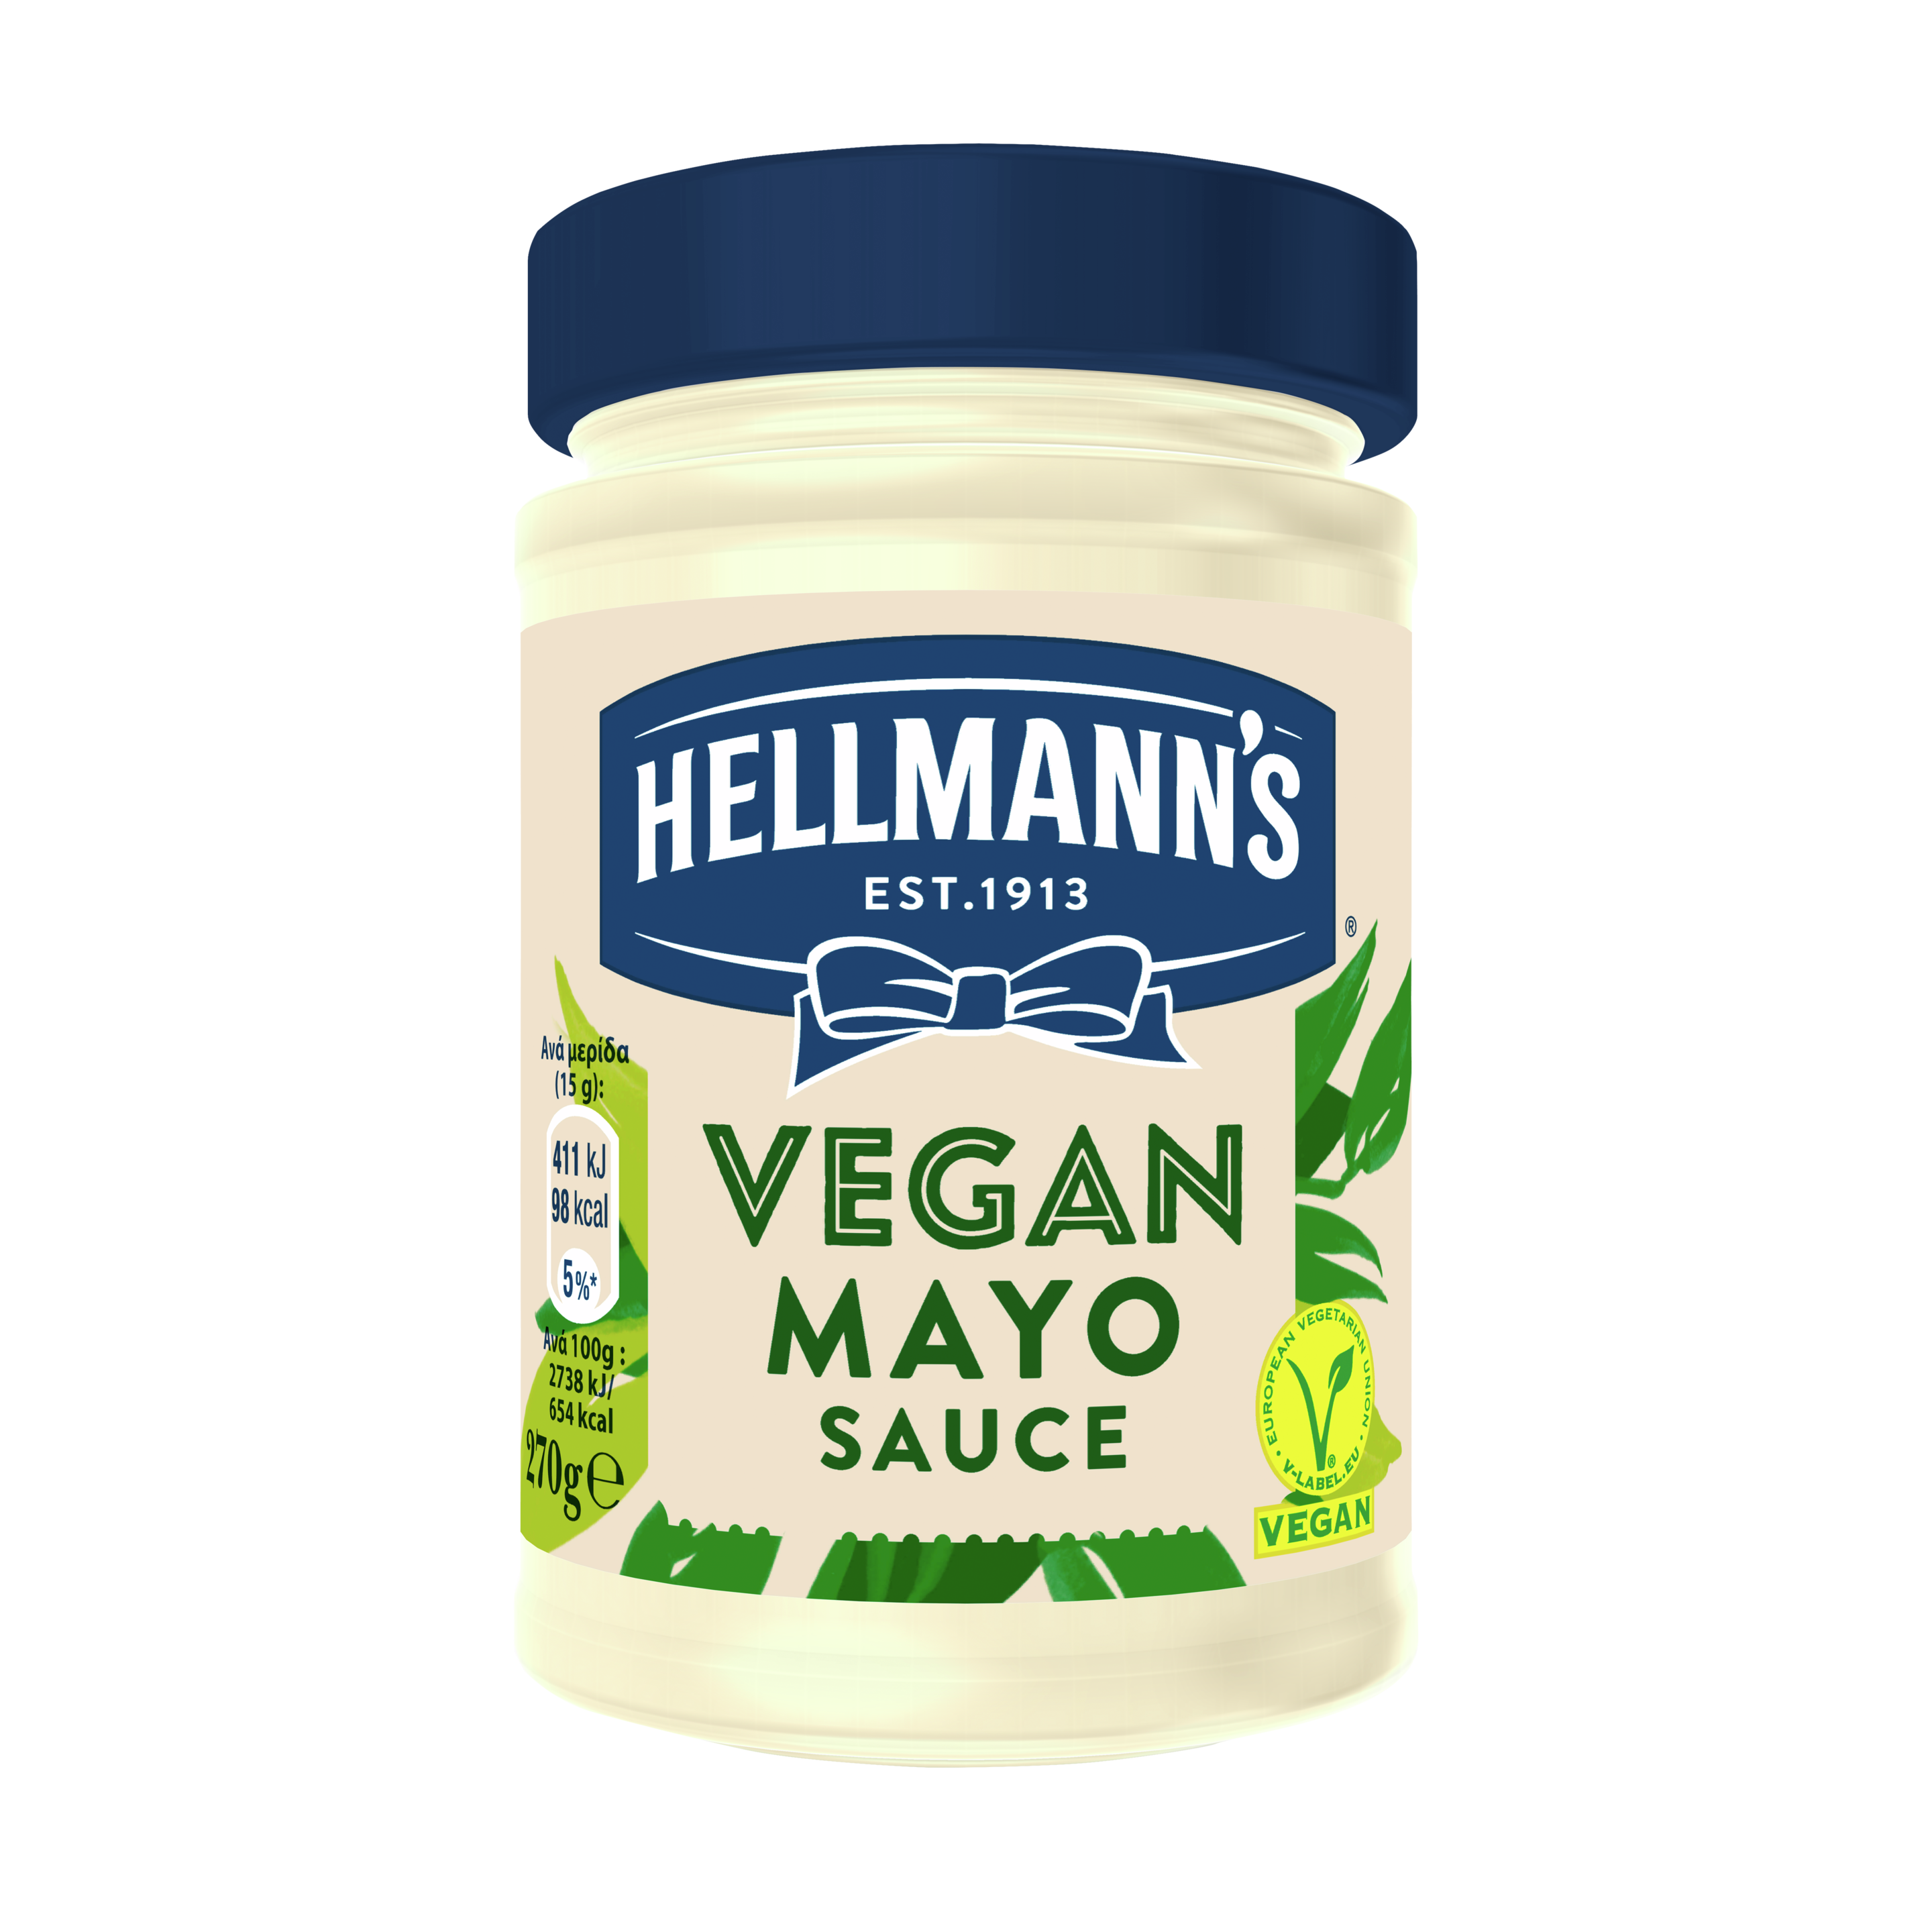 Hellmann's Vegan Mayo Sauce